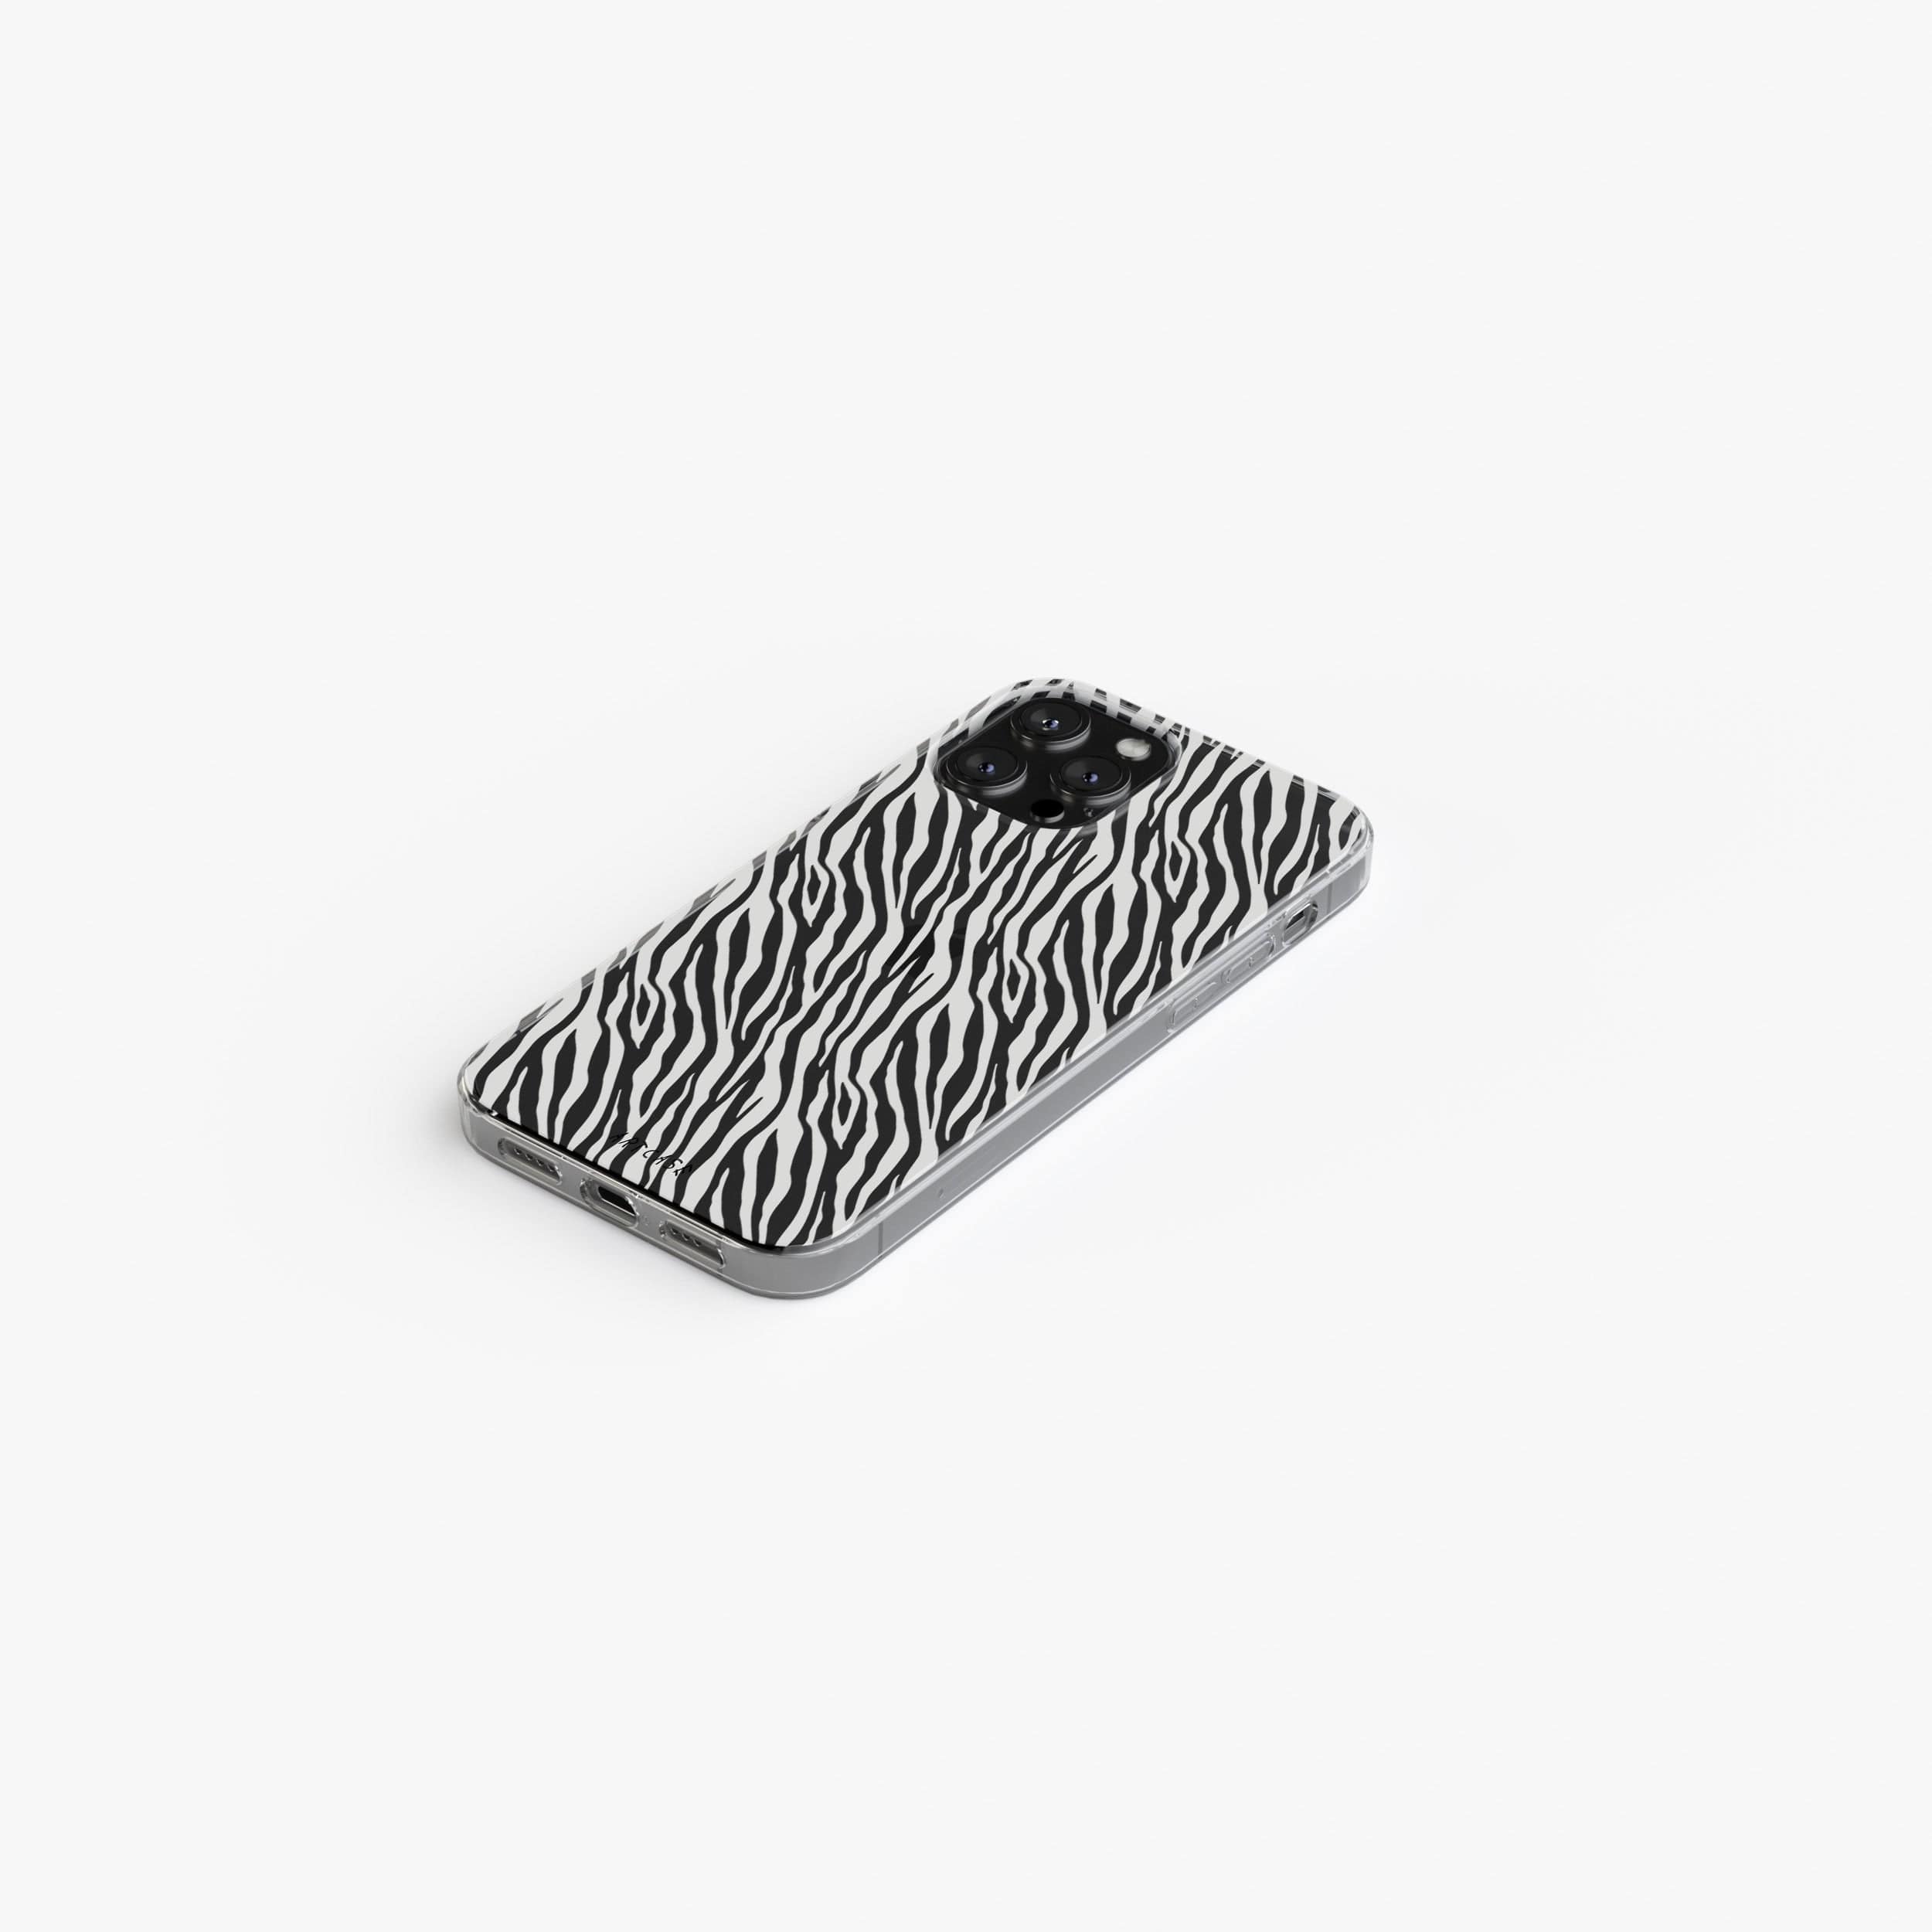 Transparent silicone case "White zebra"